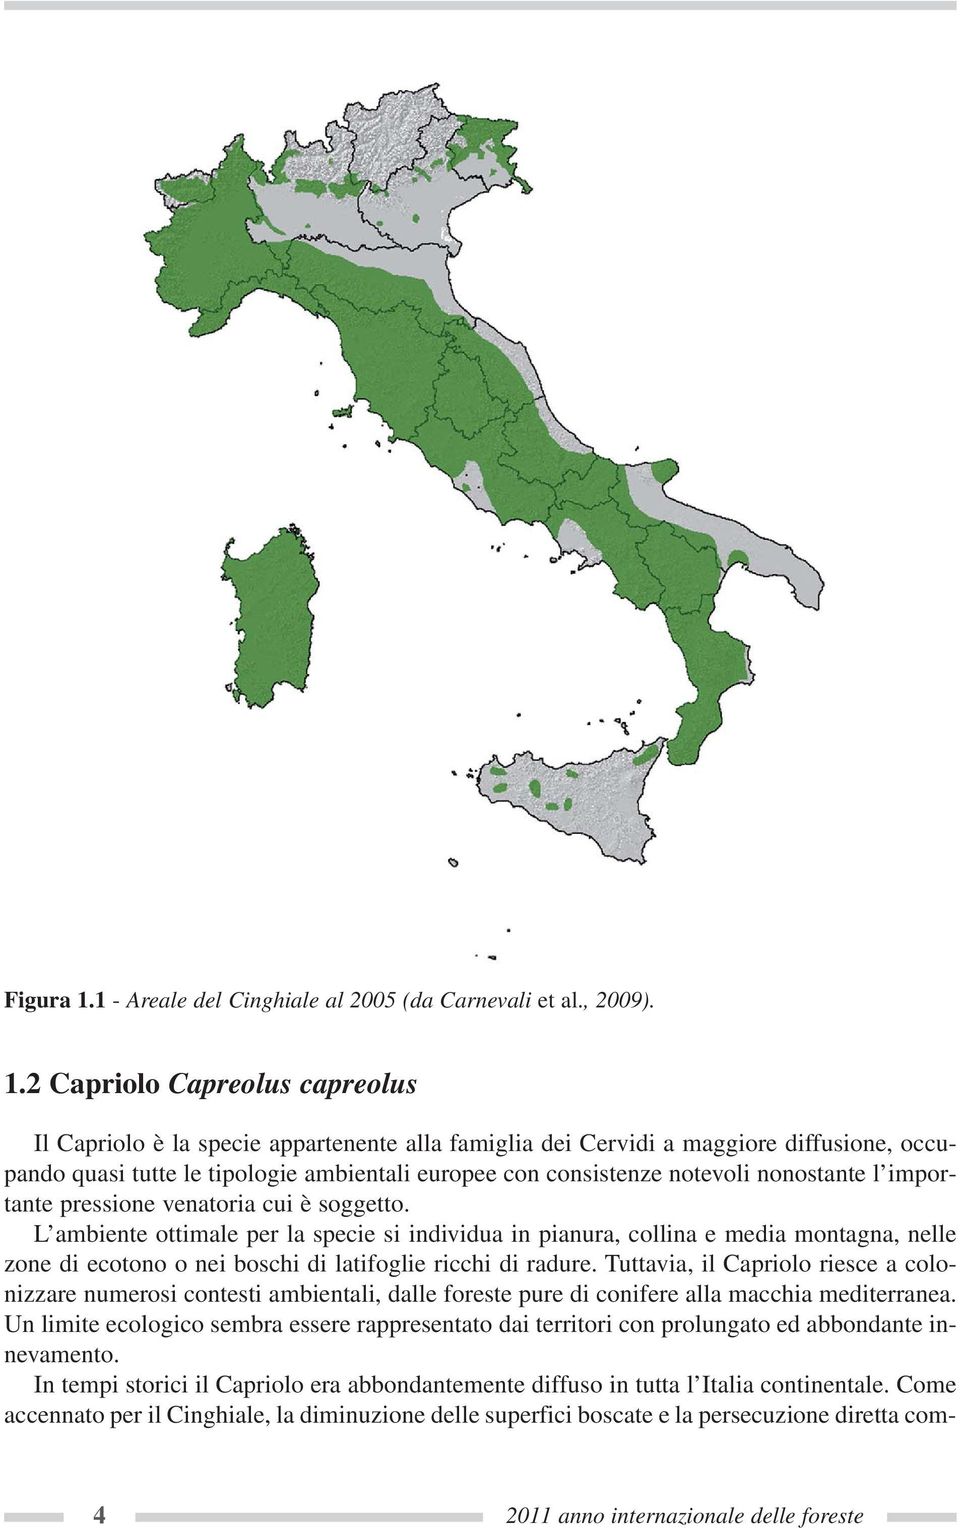 2 Capriolo Capreolus capreolus Il Capriolo è la specie appartenente alla famiglia dei Cervidi a maggiore diffusione, occupando quasi tutte le tipologie ambientali europee con consistenze notevoli